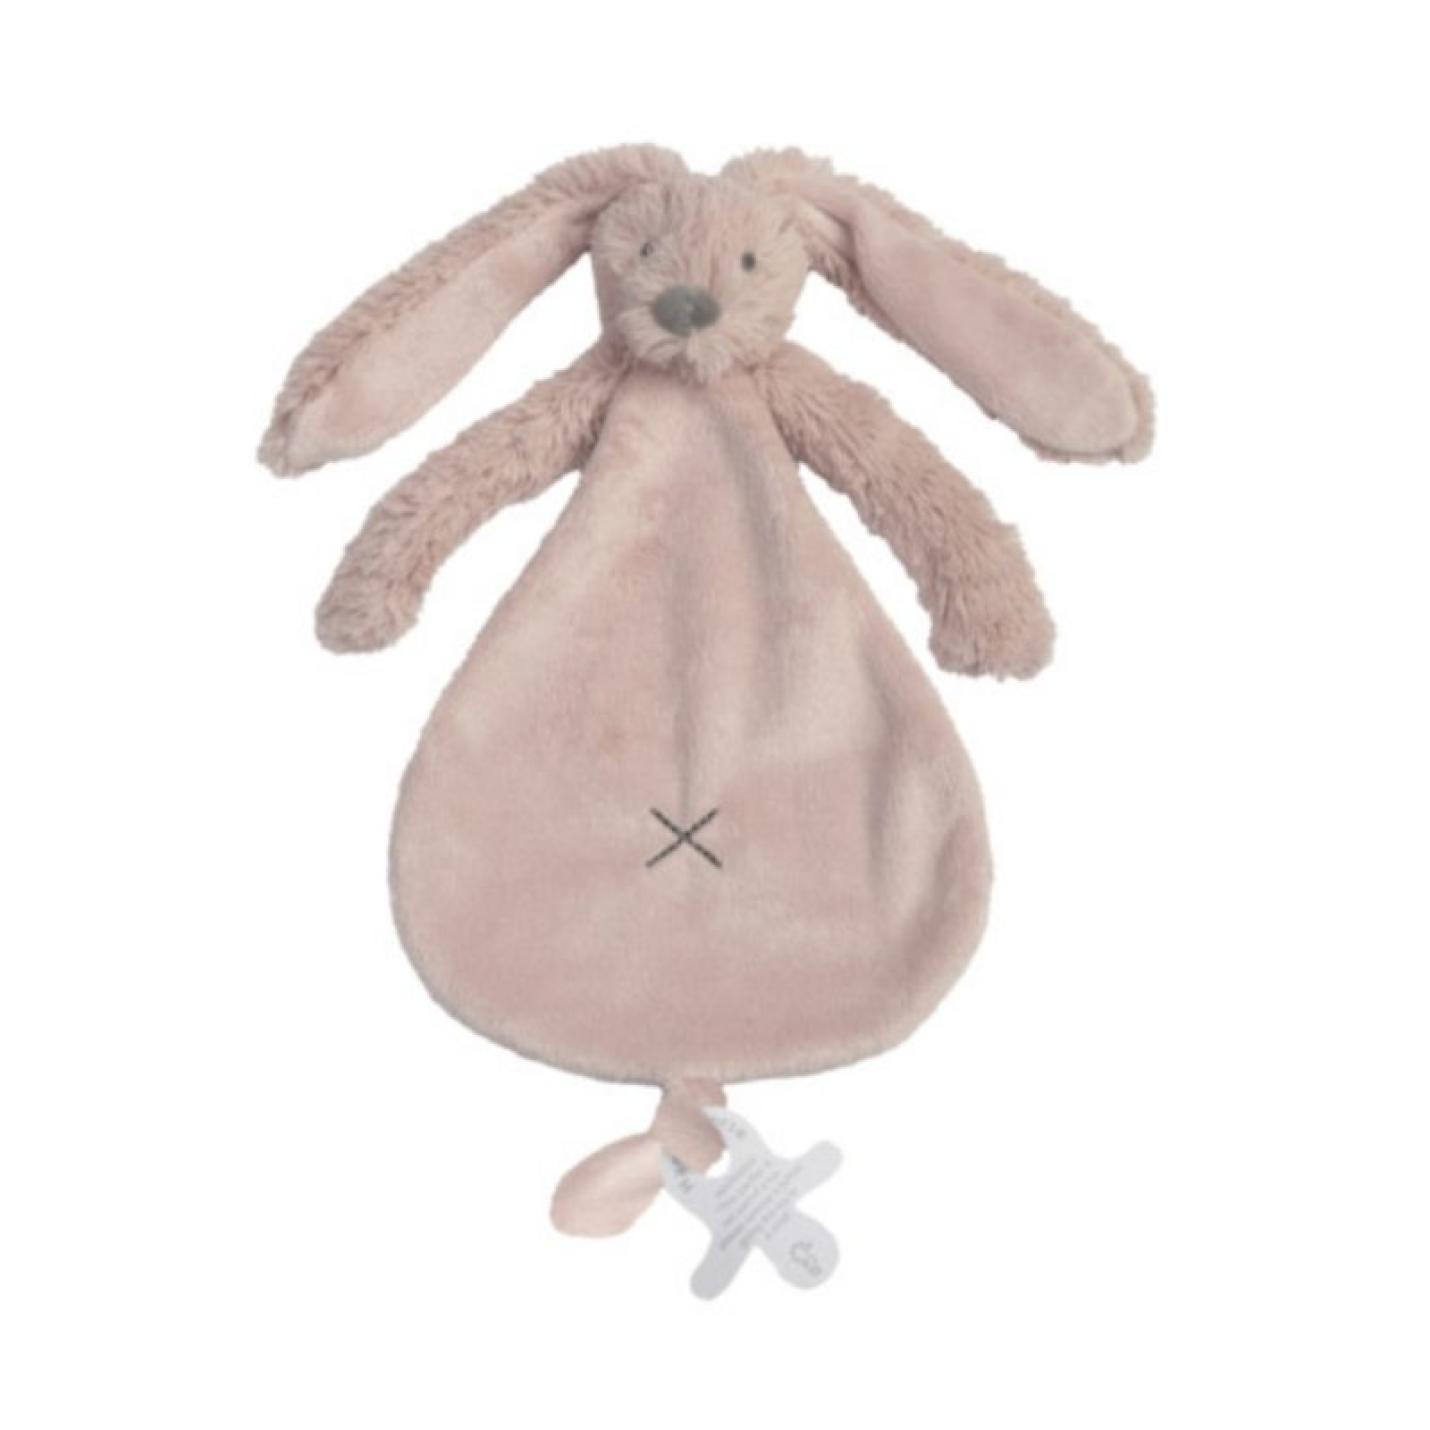 Knuffeldoekje Rabbit Richie Oudrozeis een stoffen plat goed doekje in vorm van peer met konijnkopje erbovenop lange oren en armpjes onder het hoofdje met onderaan lus voor speen